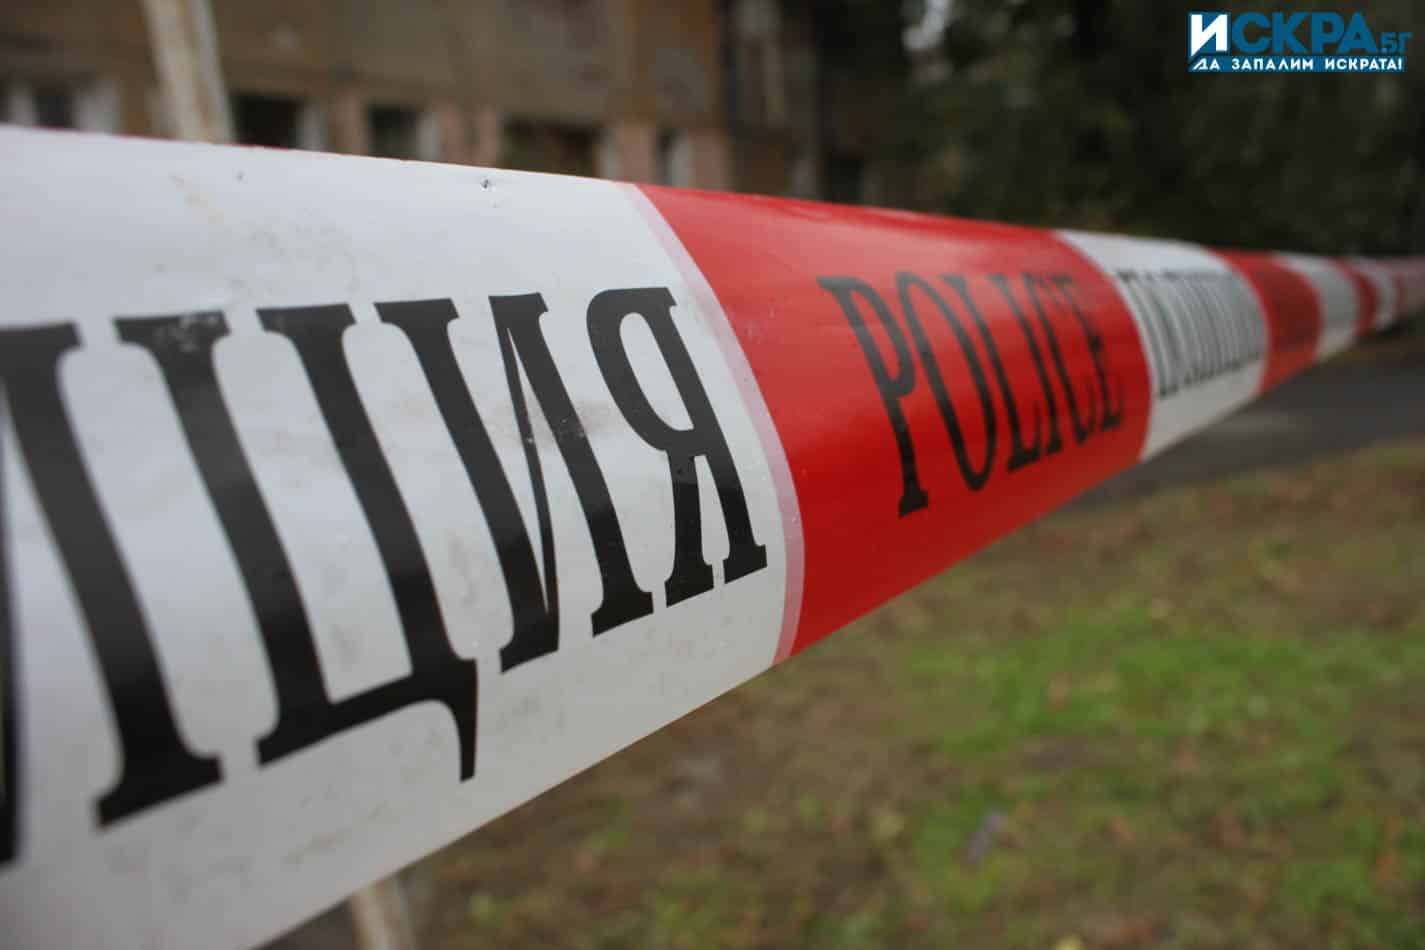 Полицията в Ботевград разследва зловещо убийство след като откри кости и